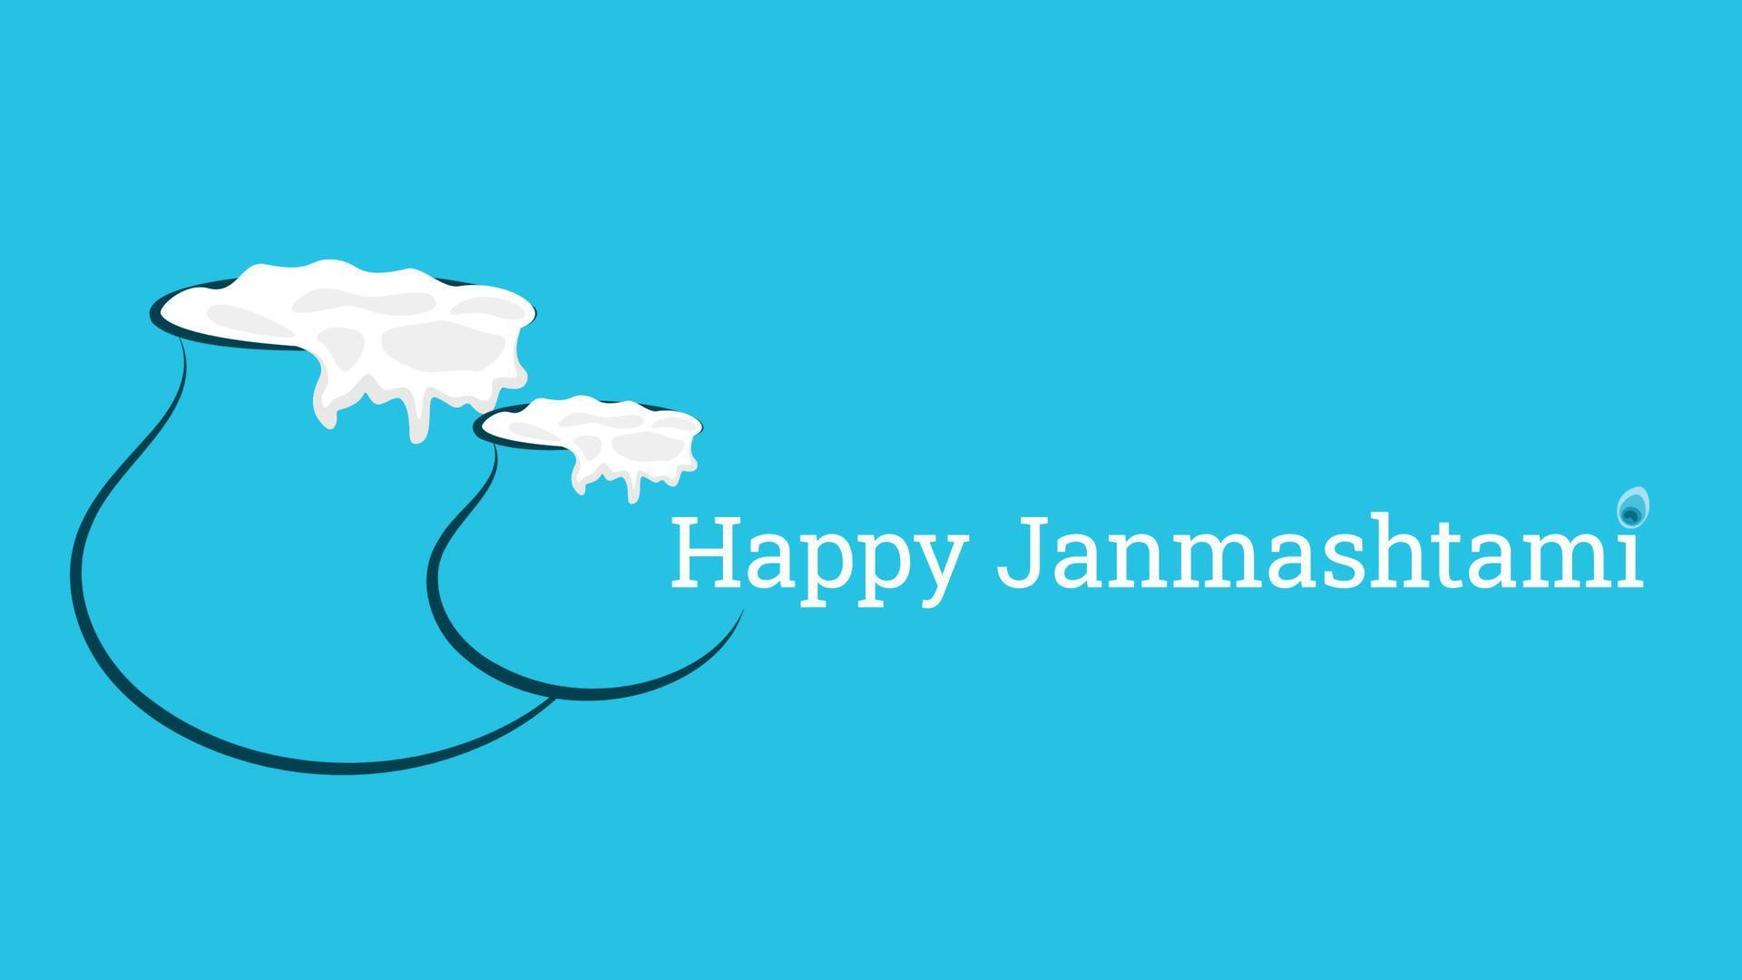 contento Janmashtami vettore illustrazione creato nel blu colore con semplice dahi Handi oggetto.